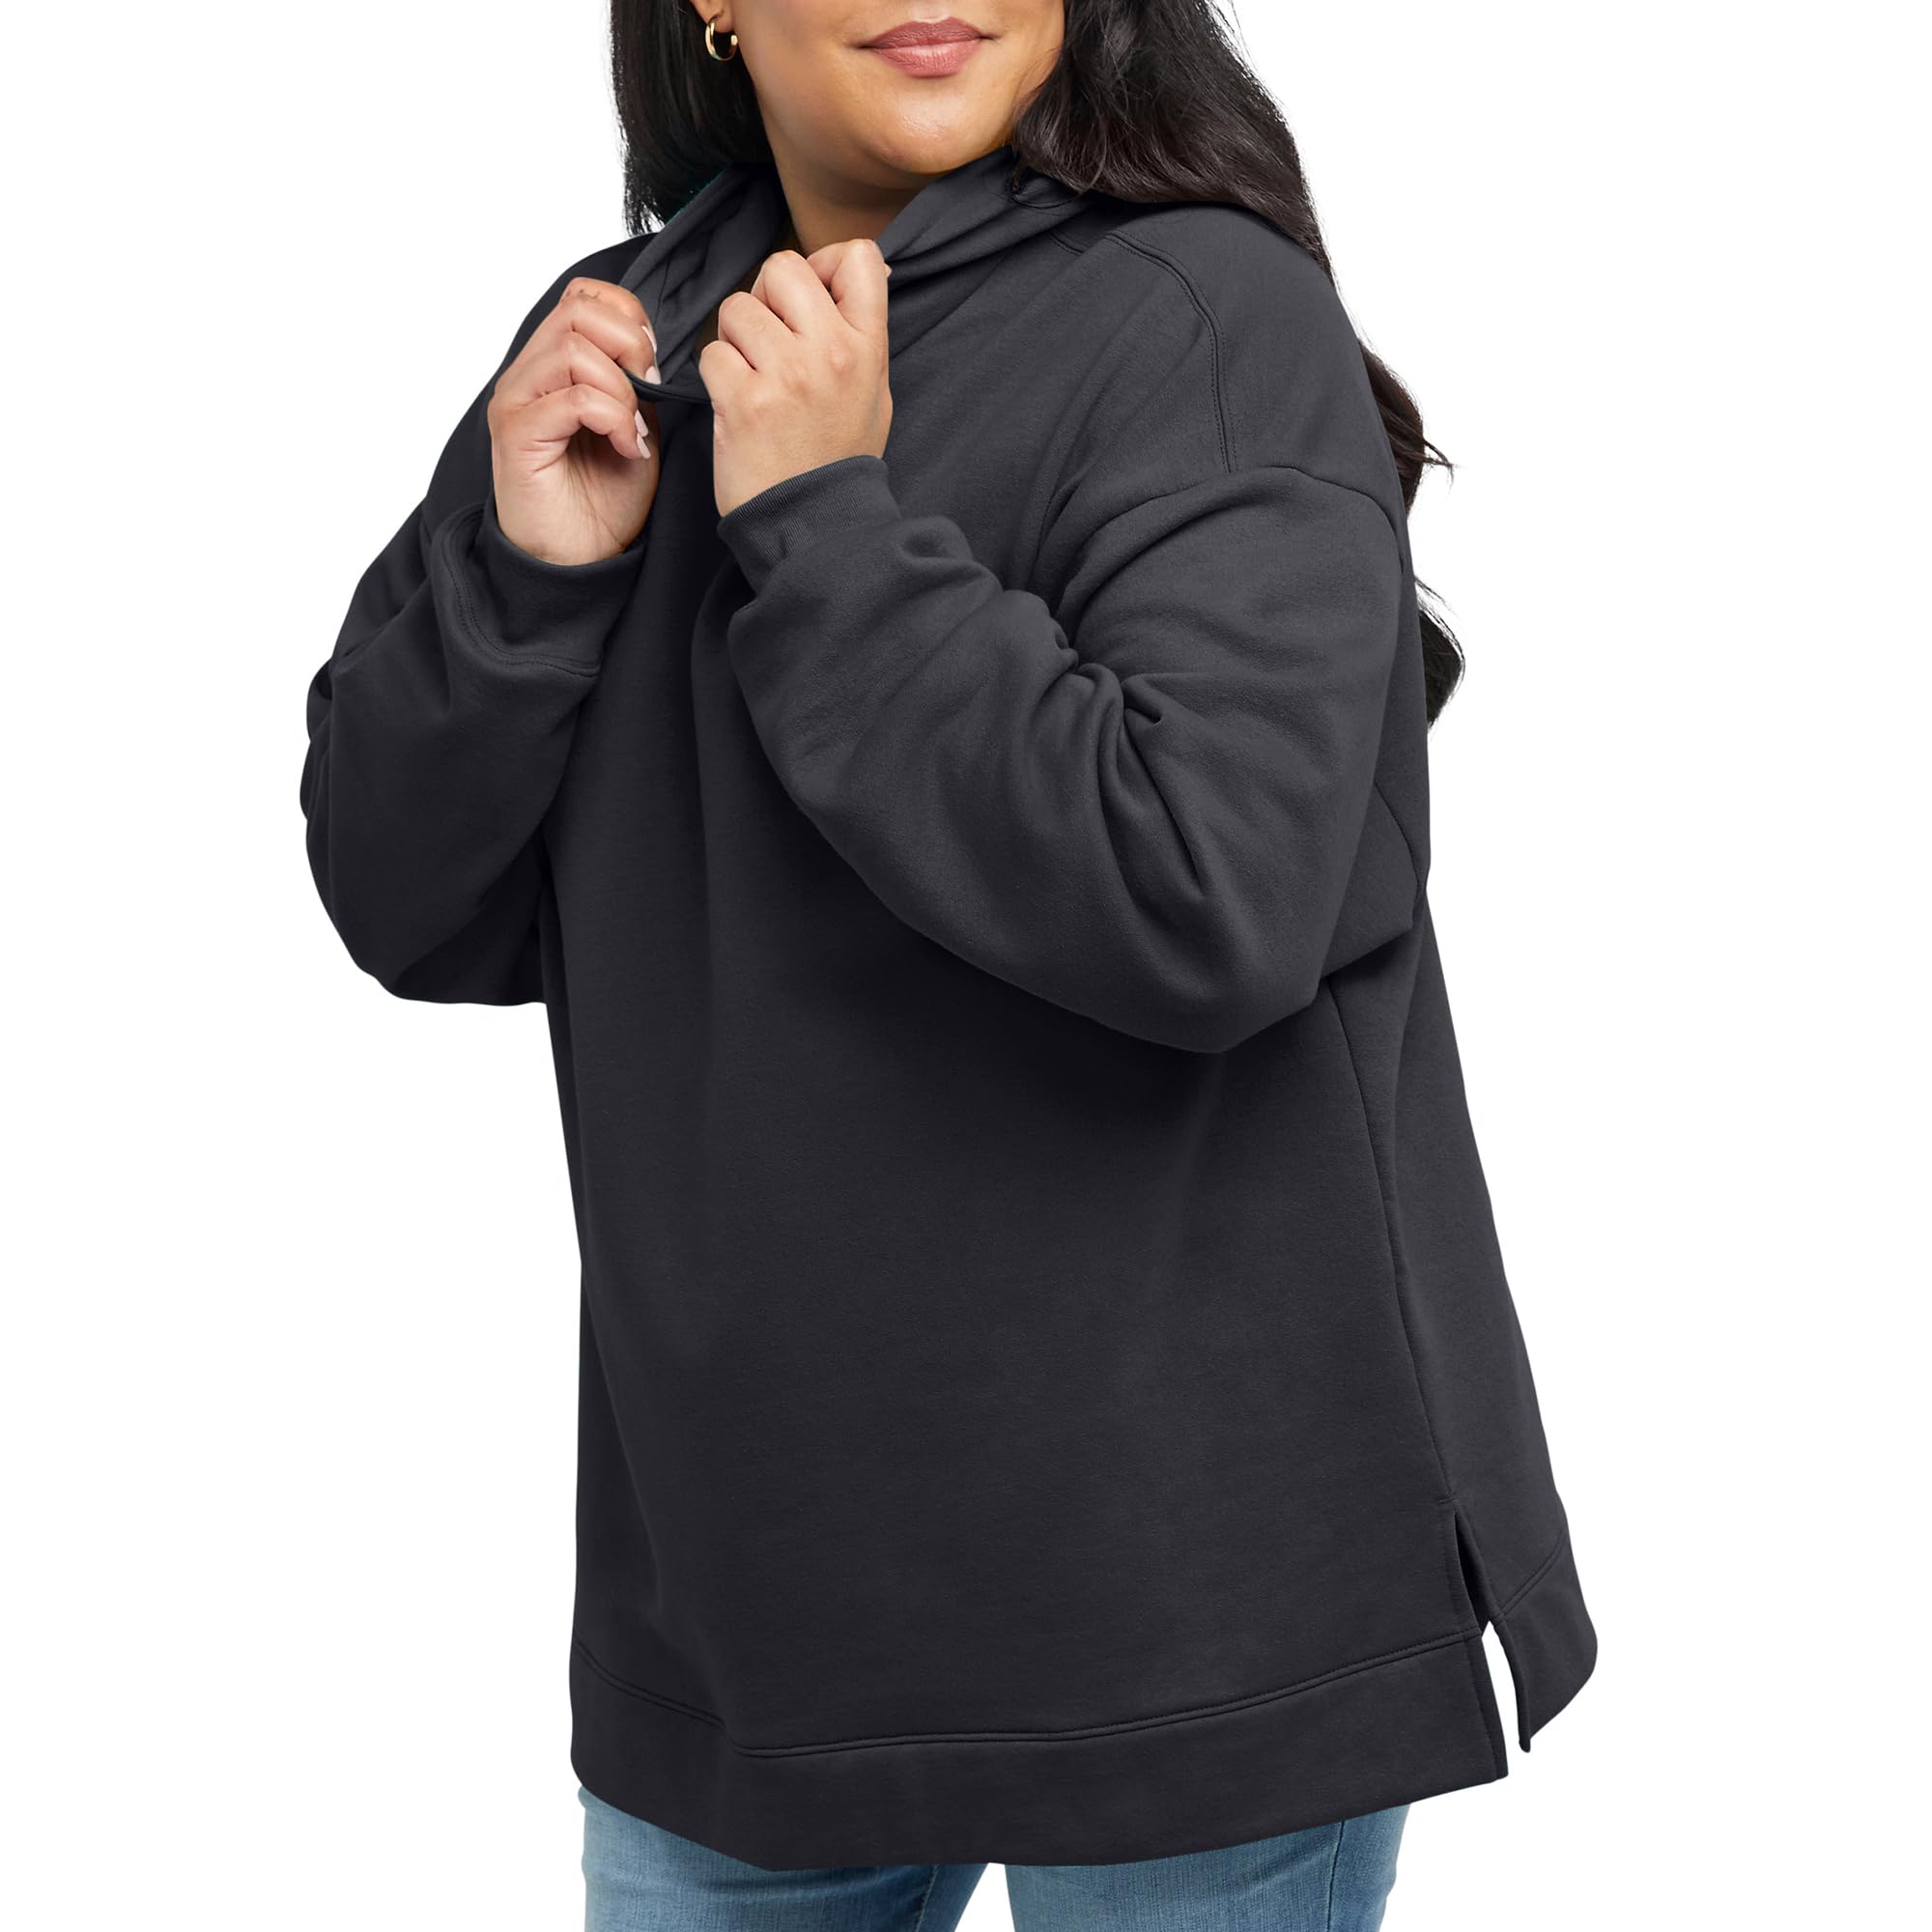 Hanes EcoSmart Plus Size Fleece Hoodie, Midweight Sweatshirt for Women, Kanga Pocket